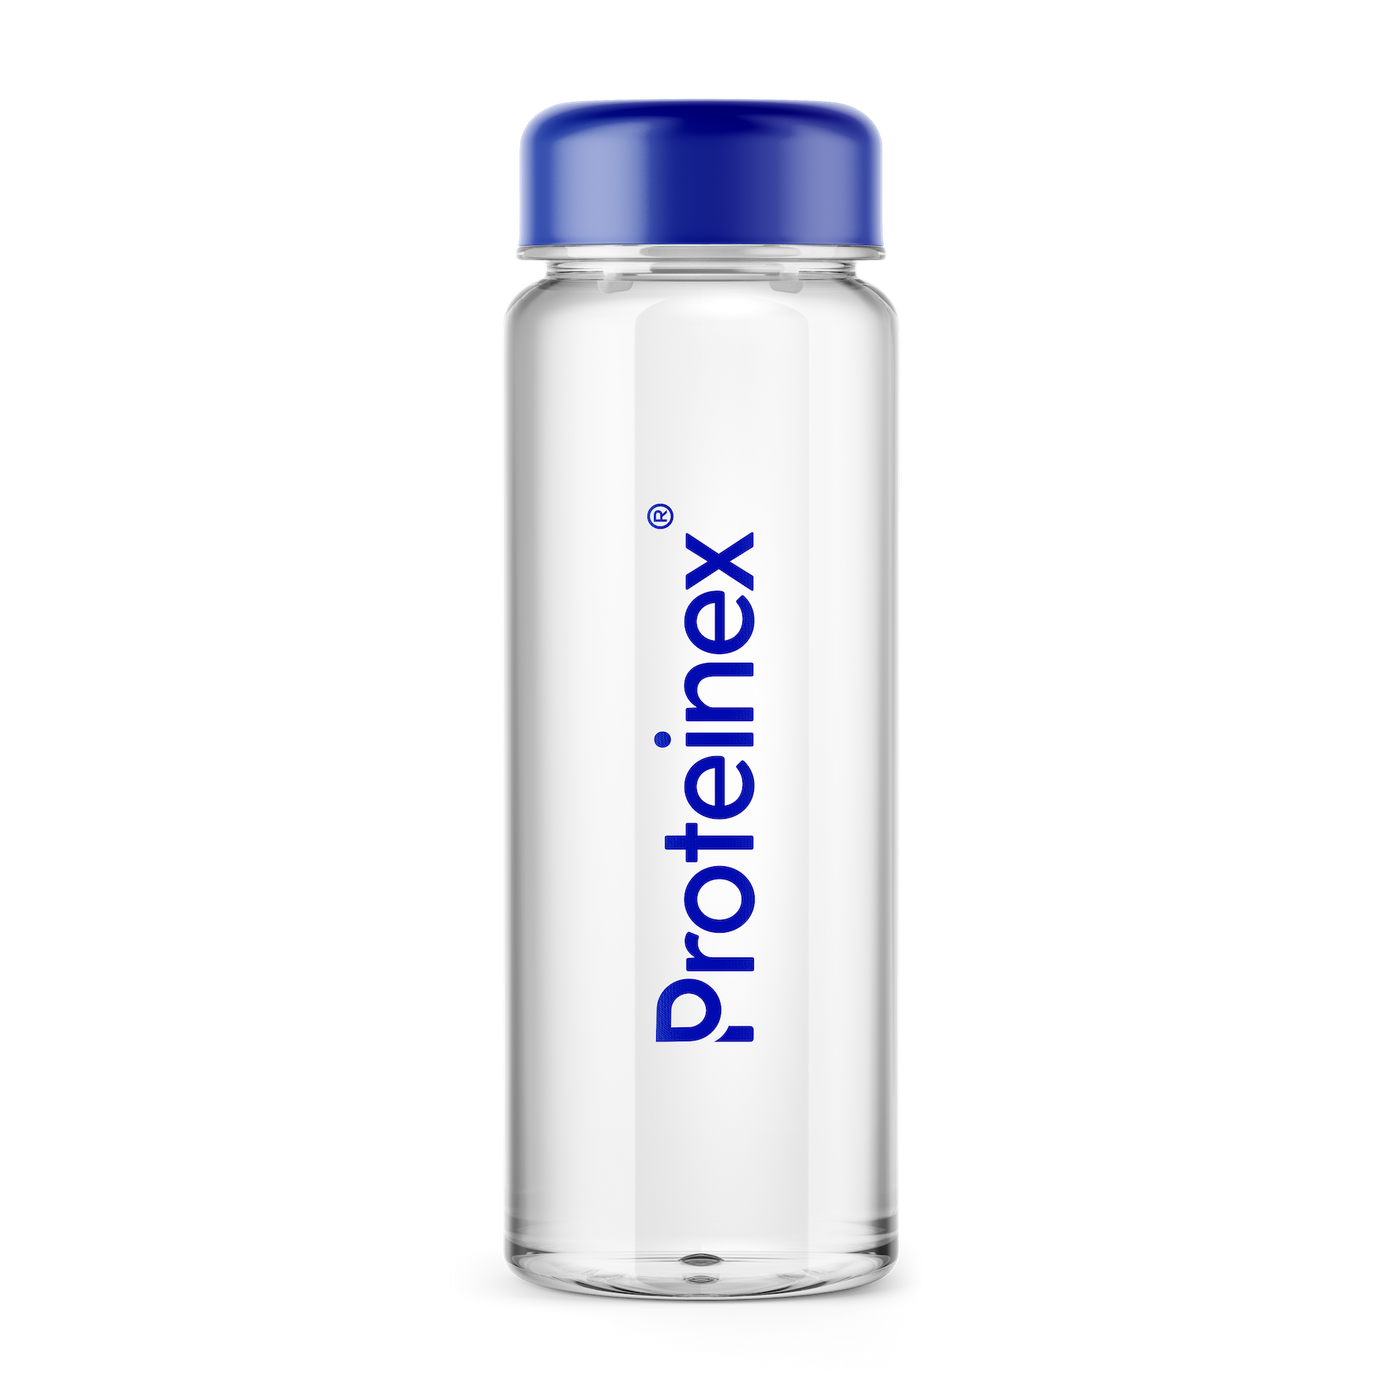 Proteinex Water Bottle